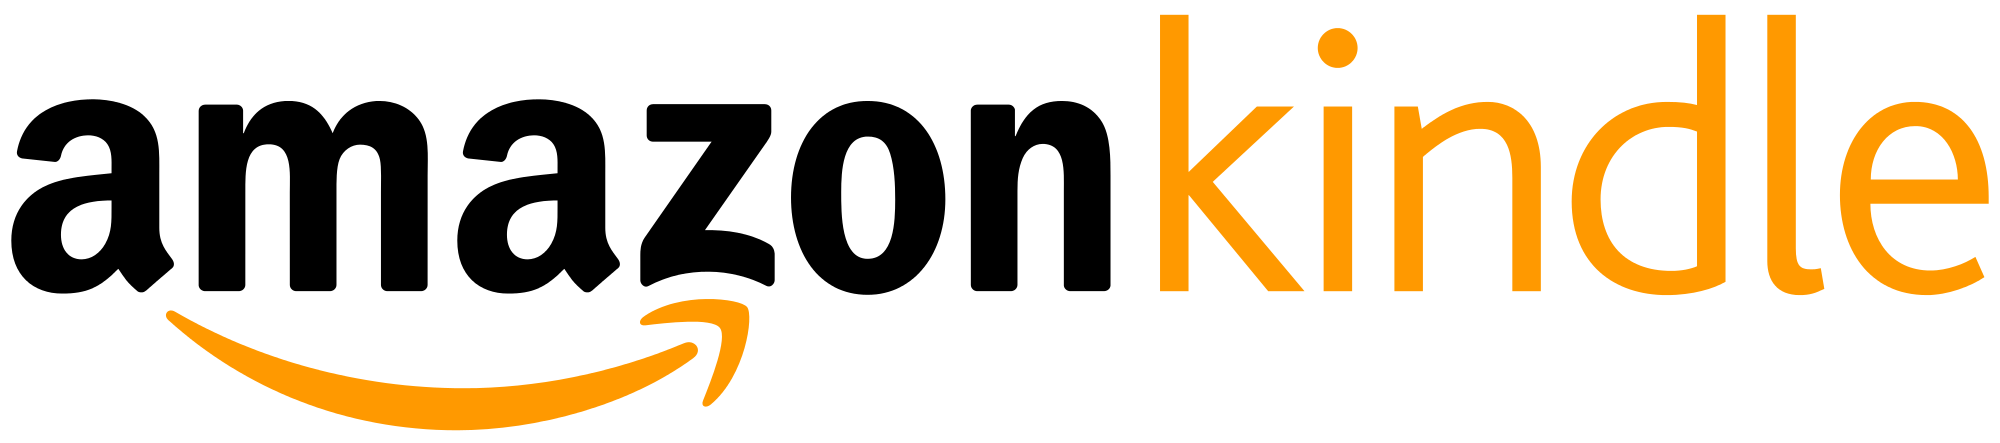 amazon kindle logo vector. am